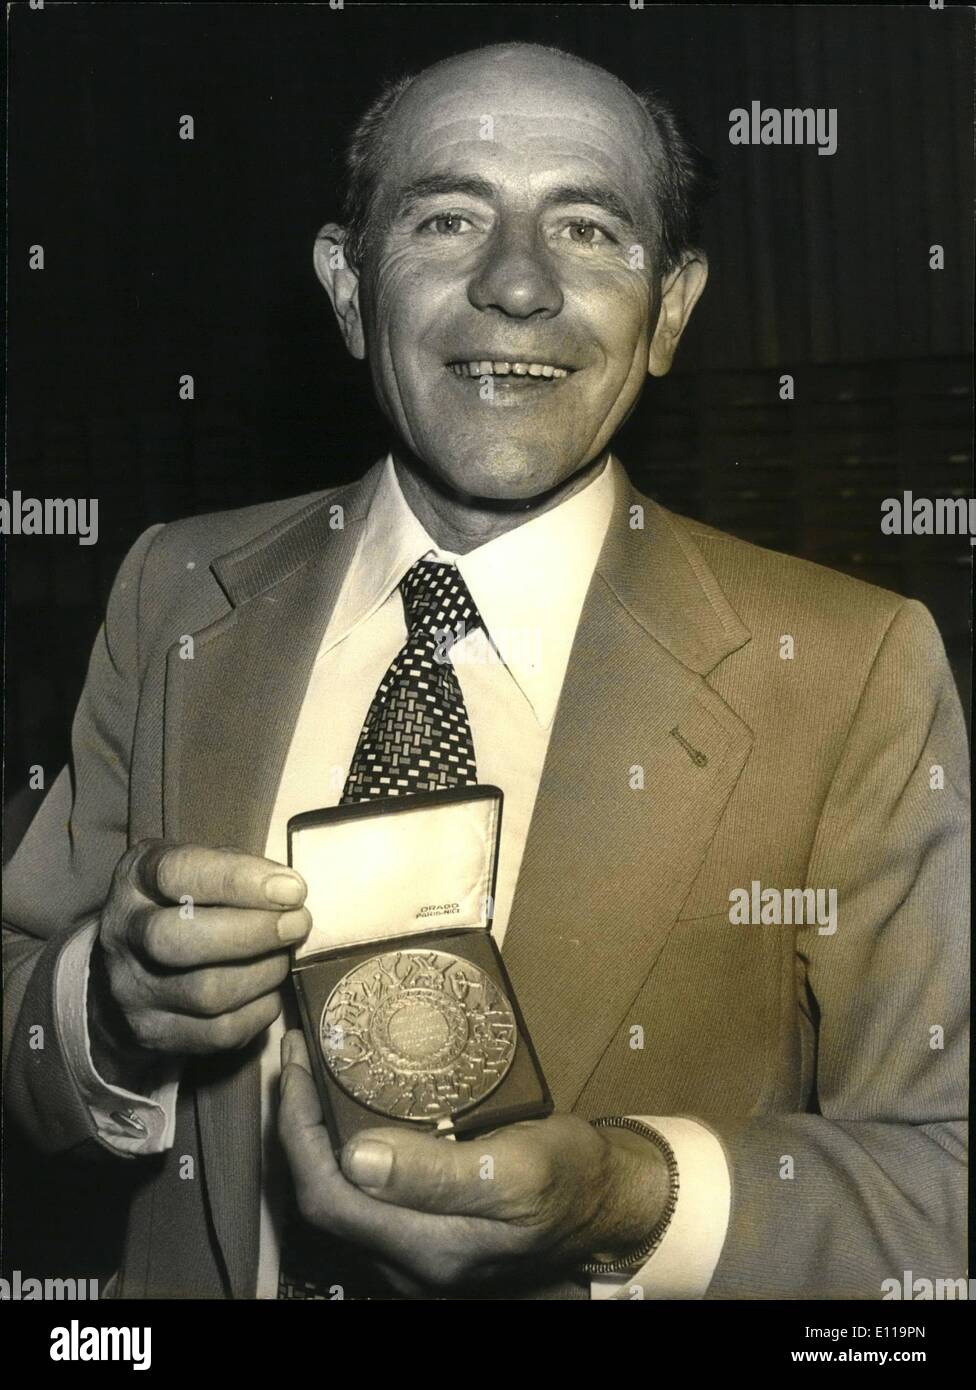 Maggio 05, 1976 - Zatopek è una lunga distanza runner dalla Jugoslavia e che è stato premiato per il suo fair play e la sportività. Pilota automobilistico Tazio Nuvolari e la sua vettura Foto Stock